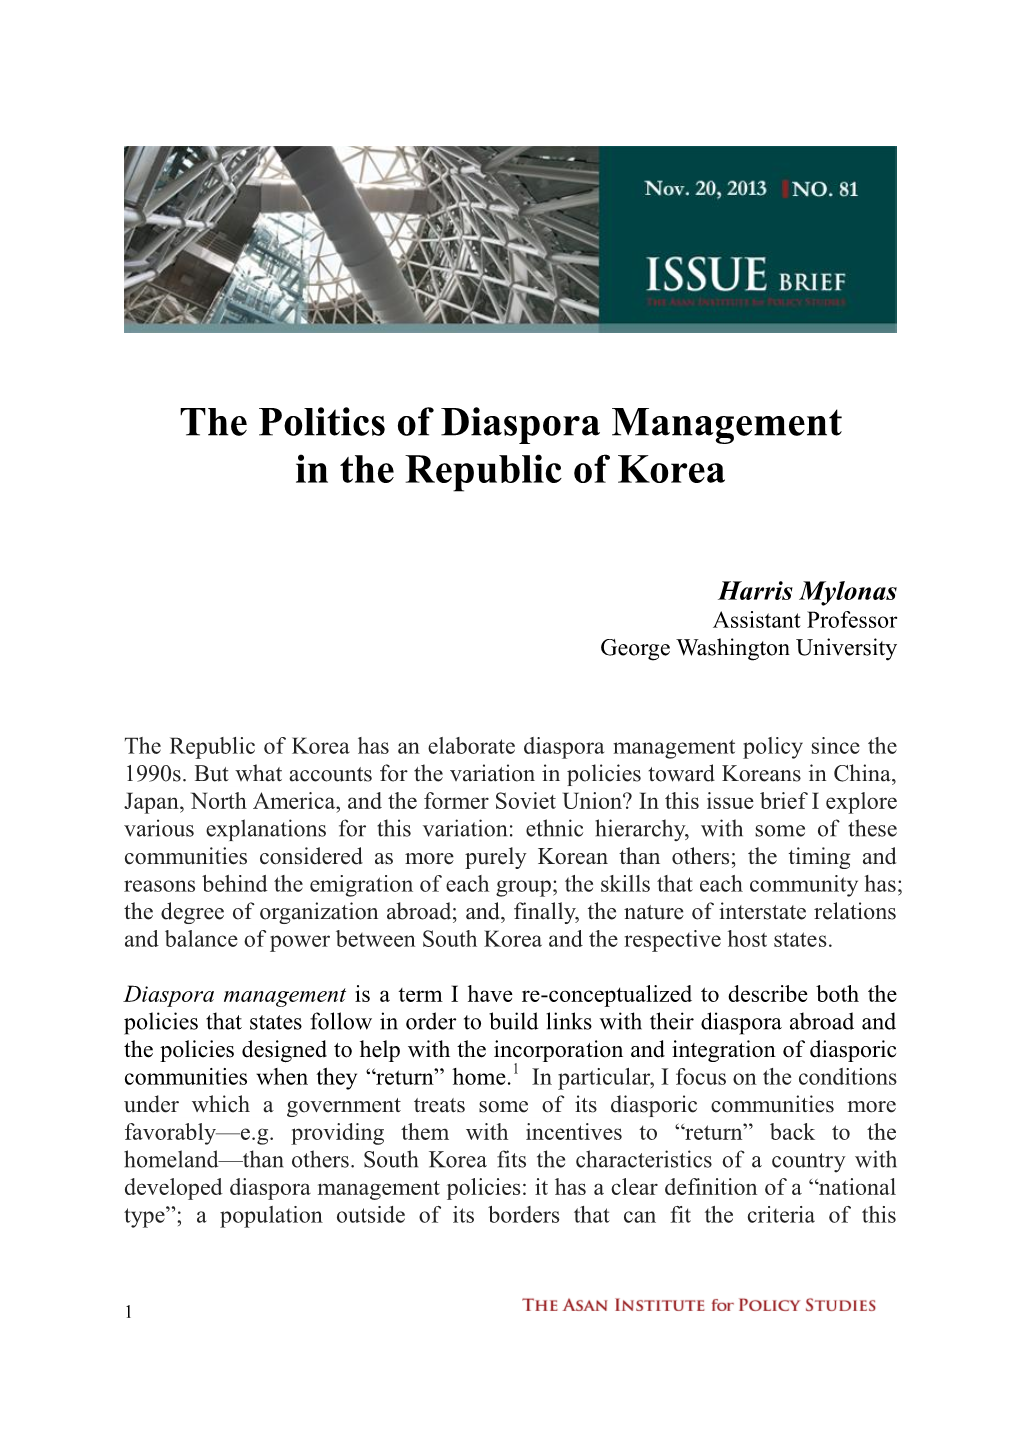 The Politics of Diaspora Management in the Republic of Korea